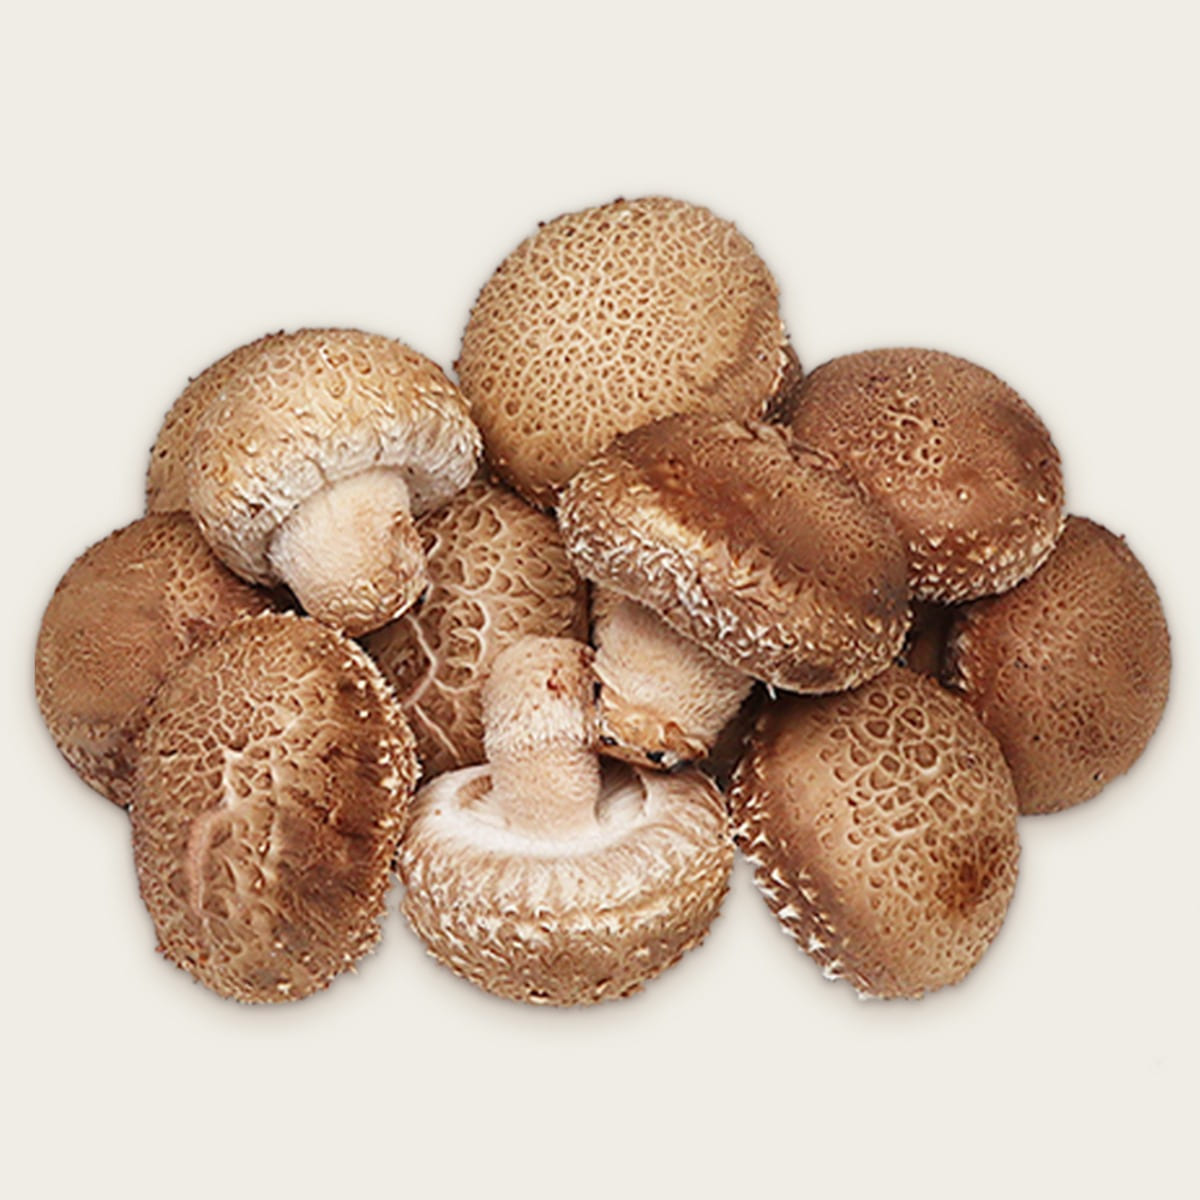 [벌교부농] 청운스마트팜  국내산 송화버섯 1kg